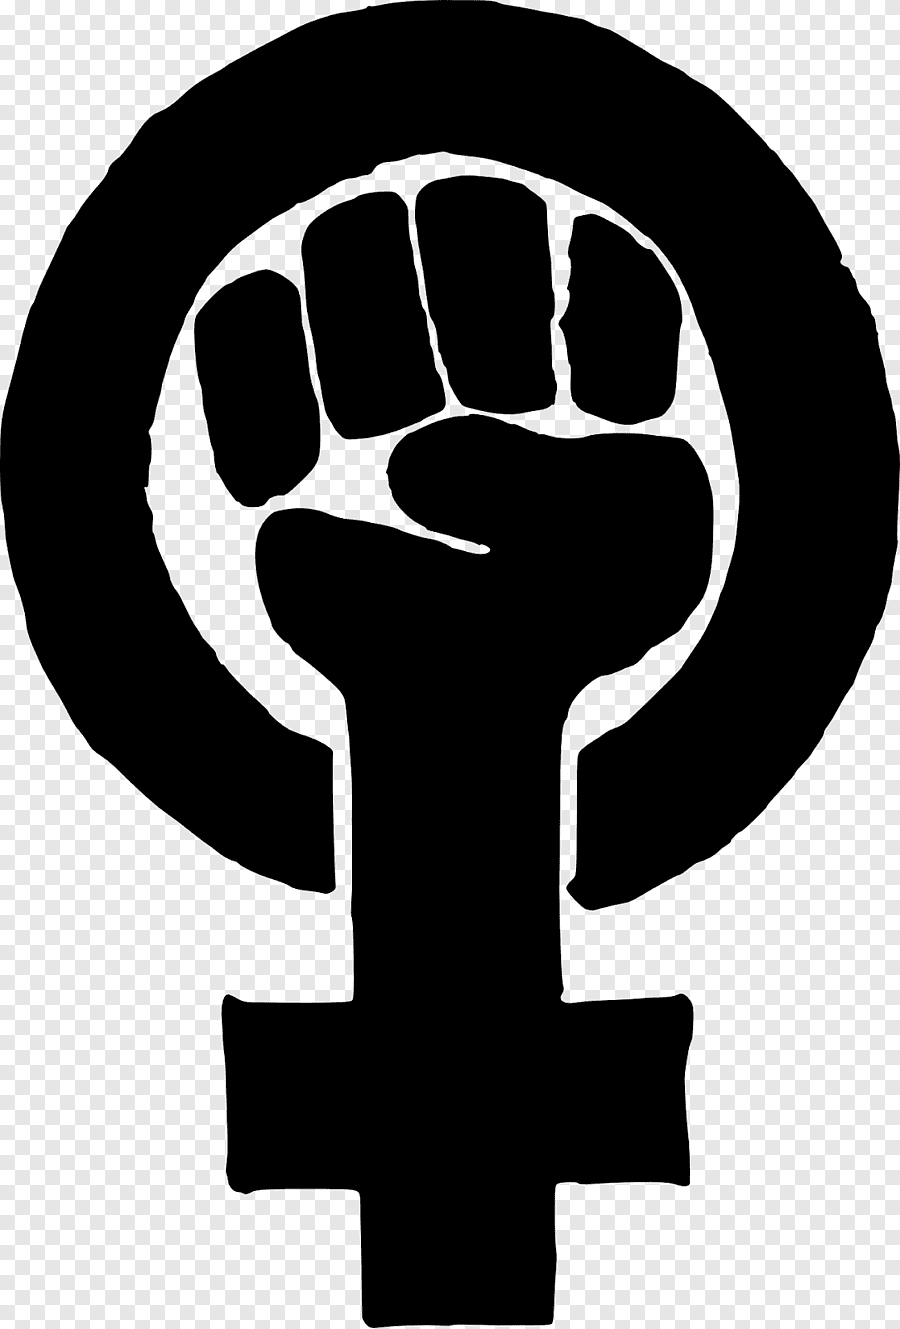 Флаг феминизма. Знак феминизма символ. Символ феминизма кулак. Логотип феминисток. Радикальный феминизм символ.